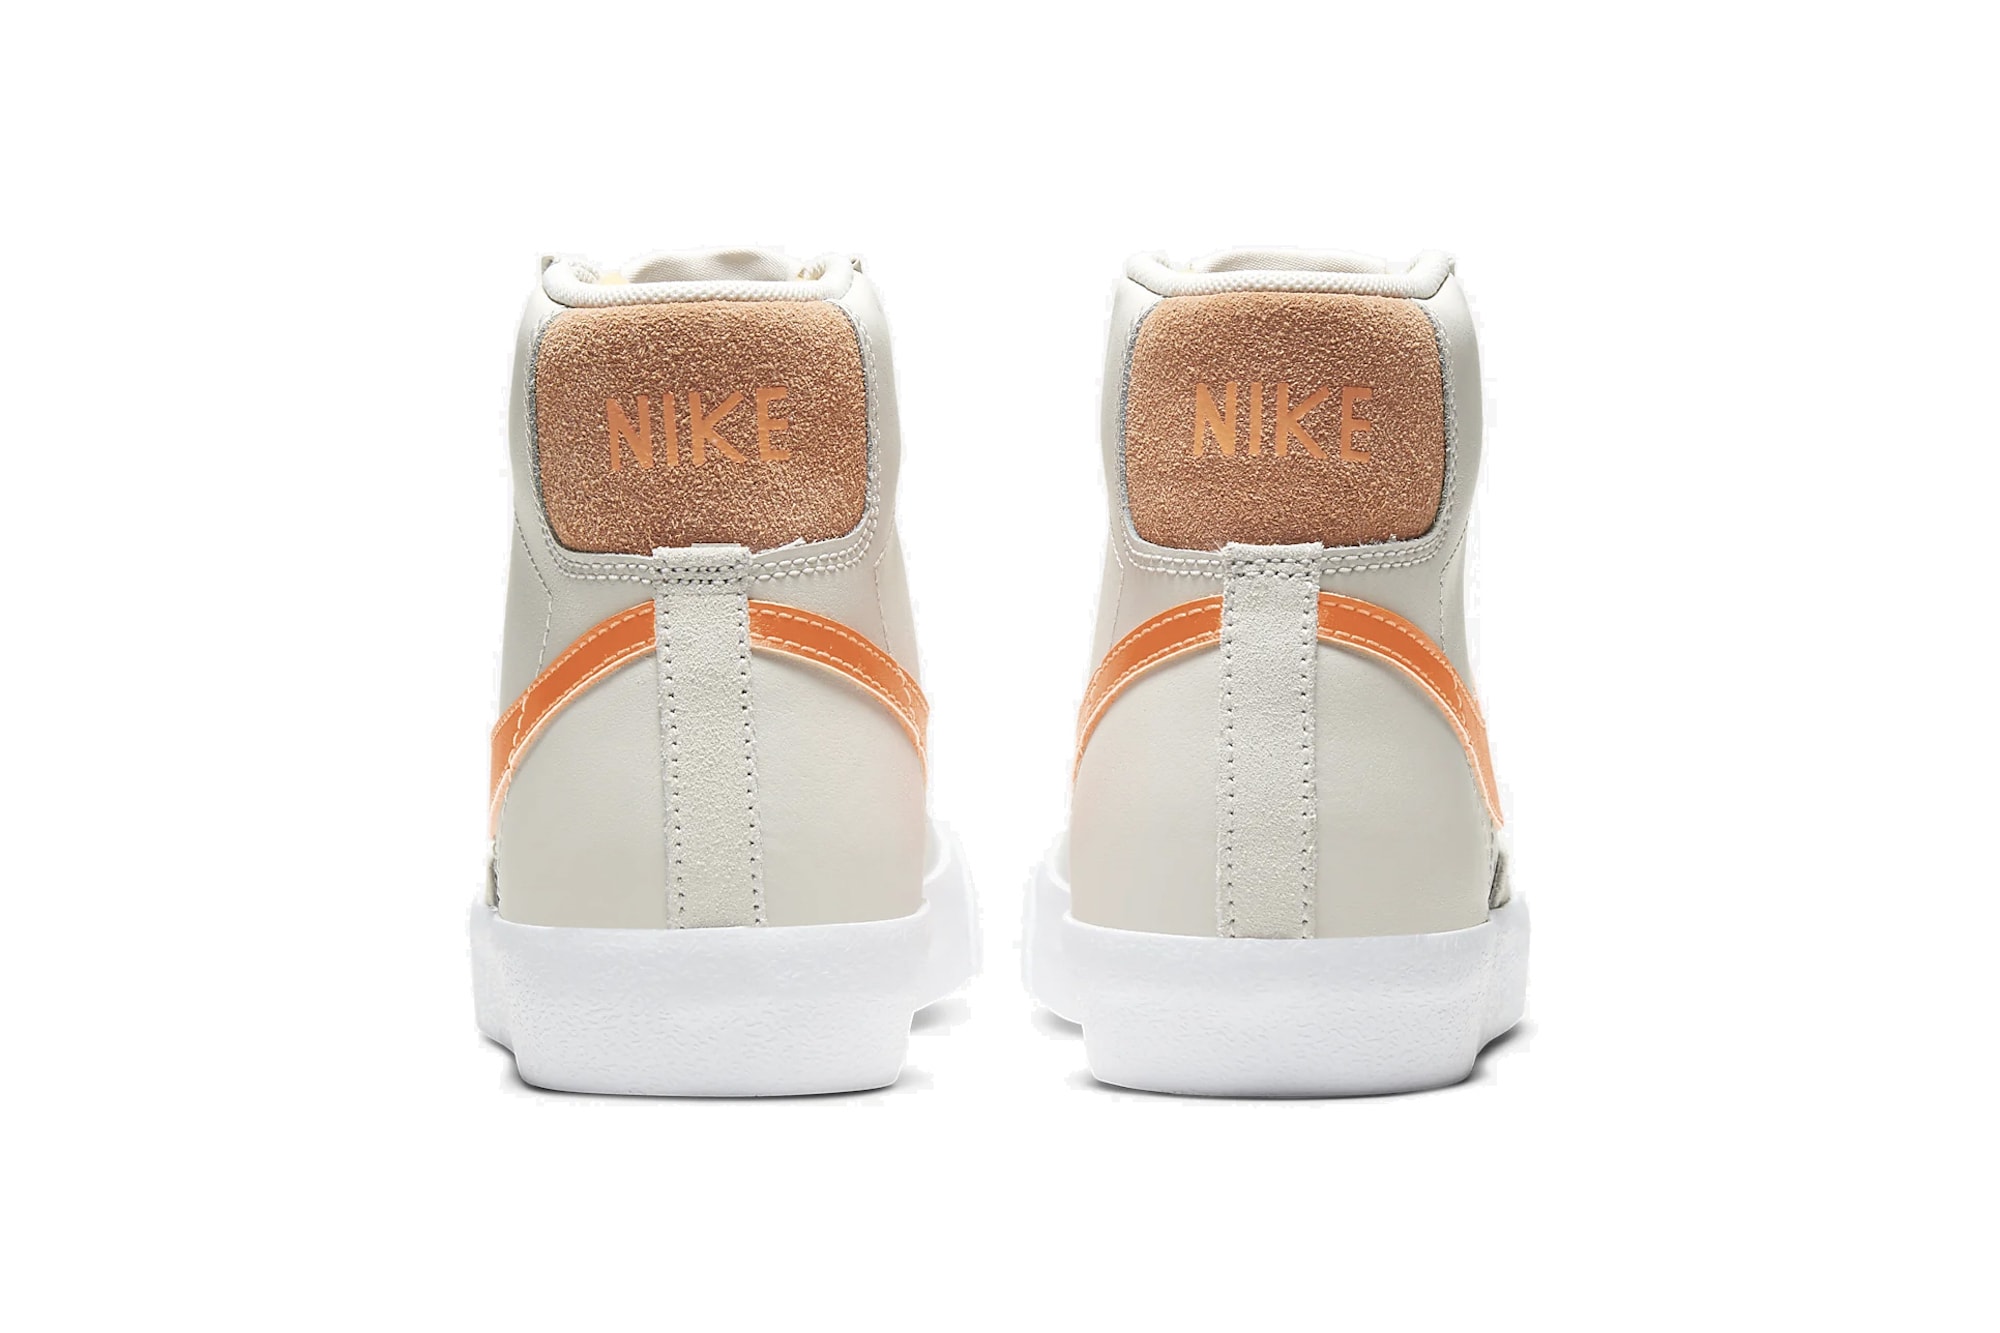 Nike Blazer Mid "Total Orange" Sneaker Release Beige Retro Trainer Shoe